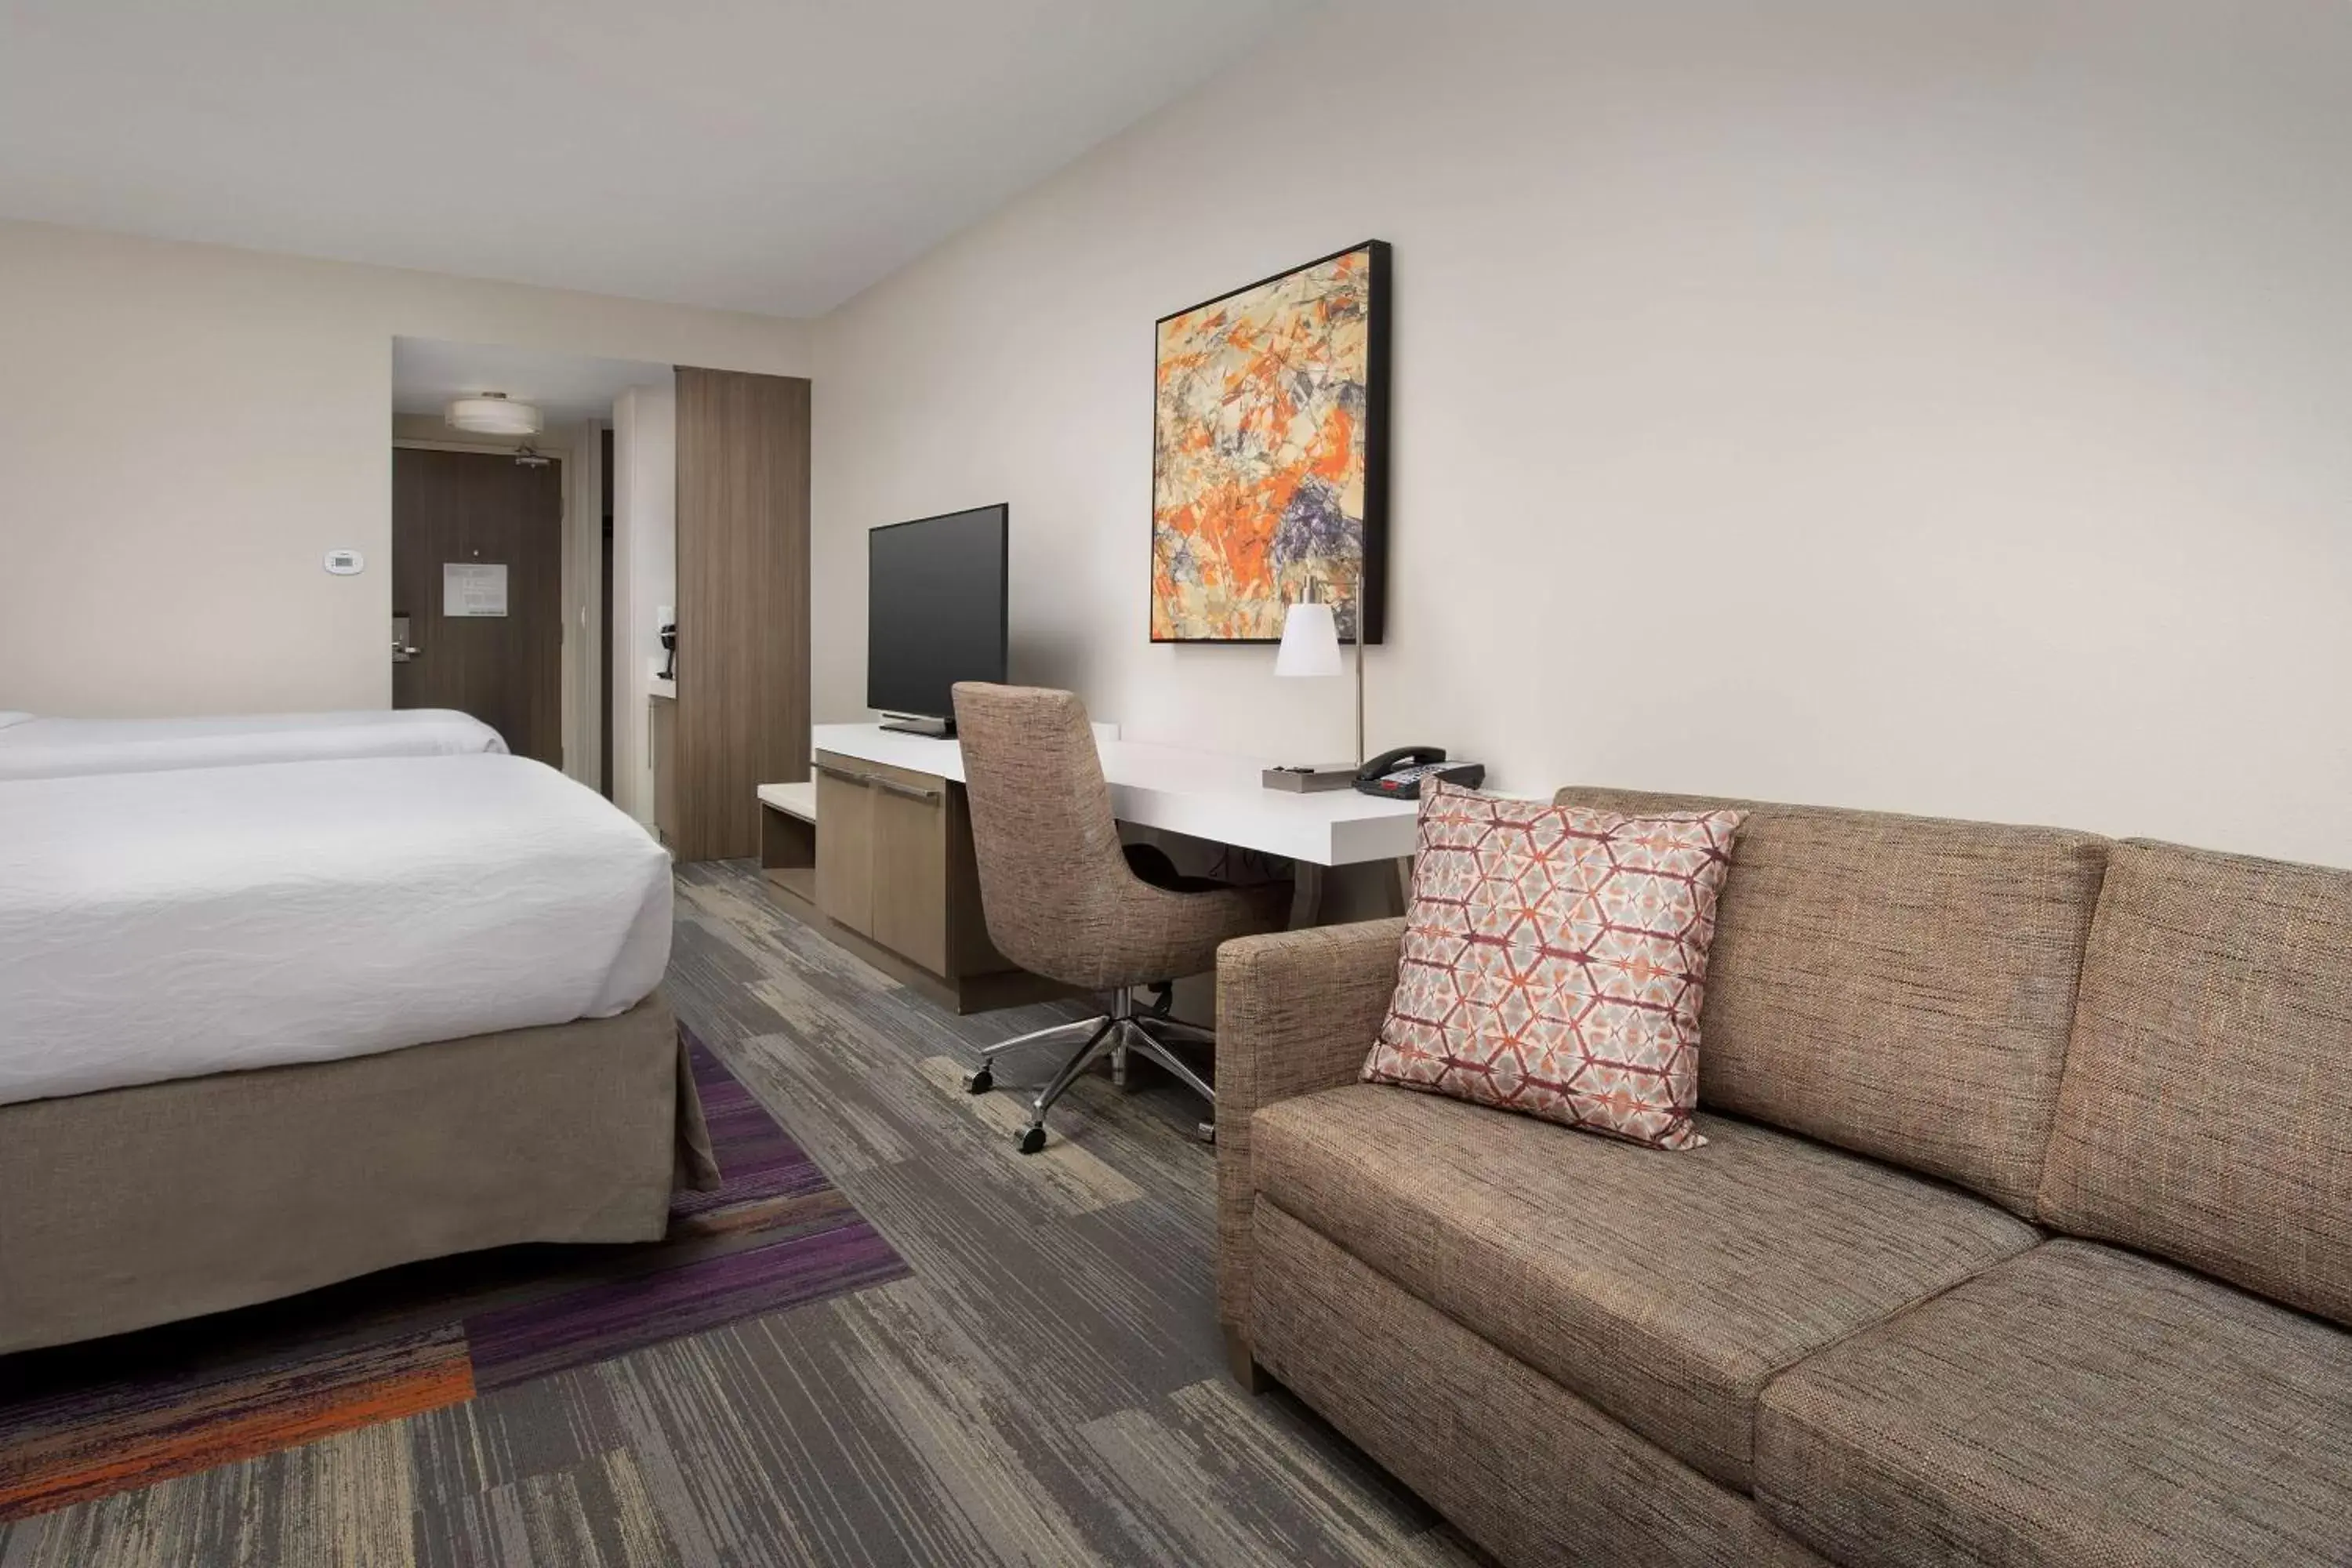 Bedroom in Hilton Garden Inn Columbia Airport, SC